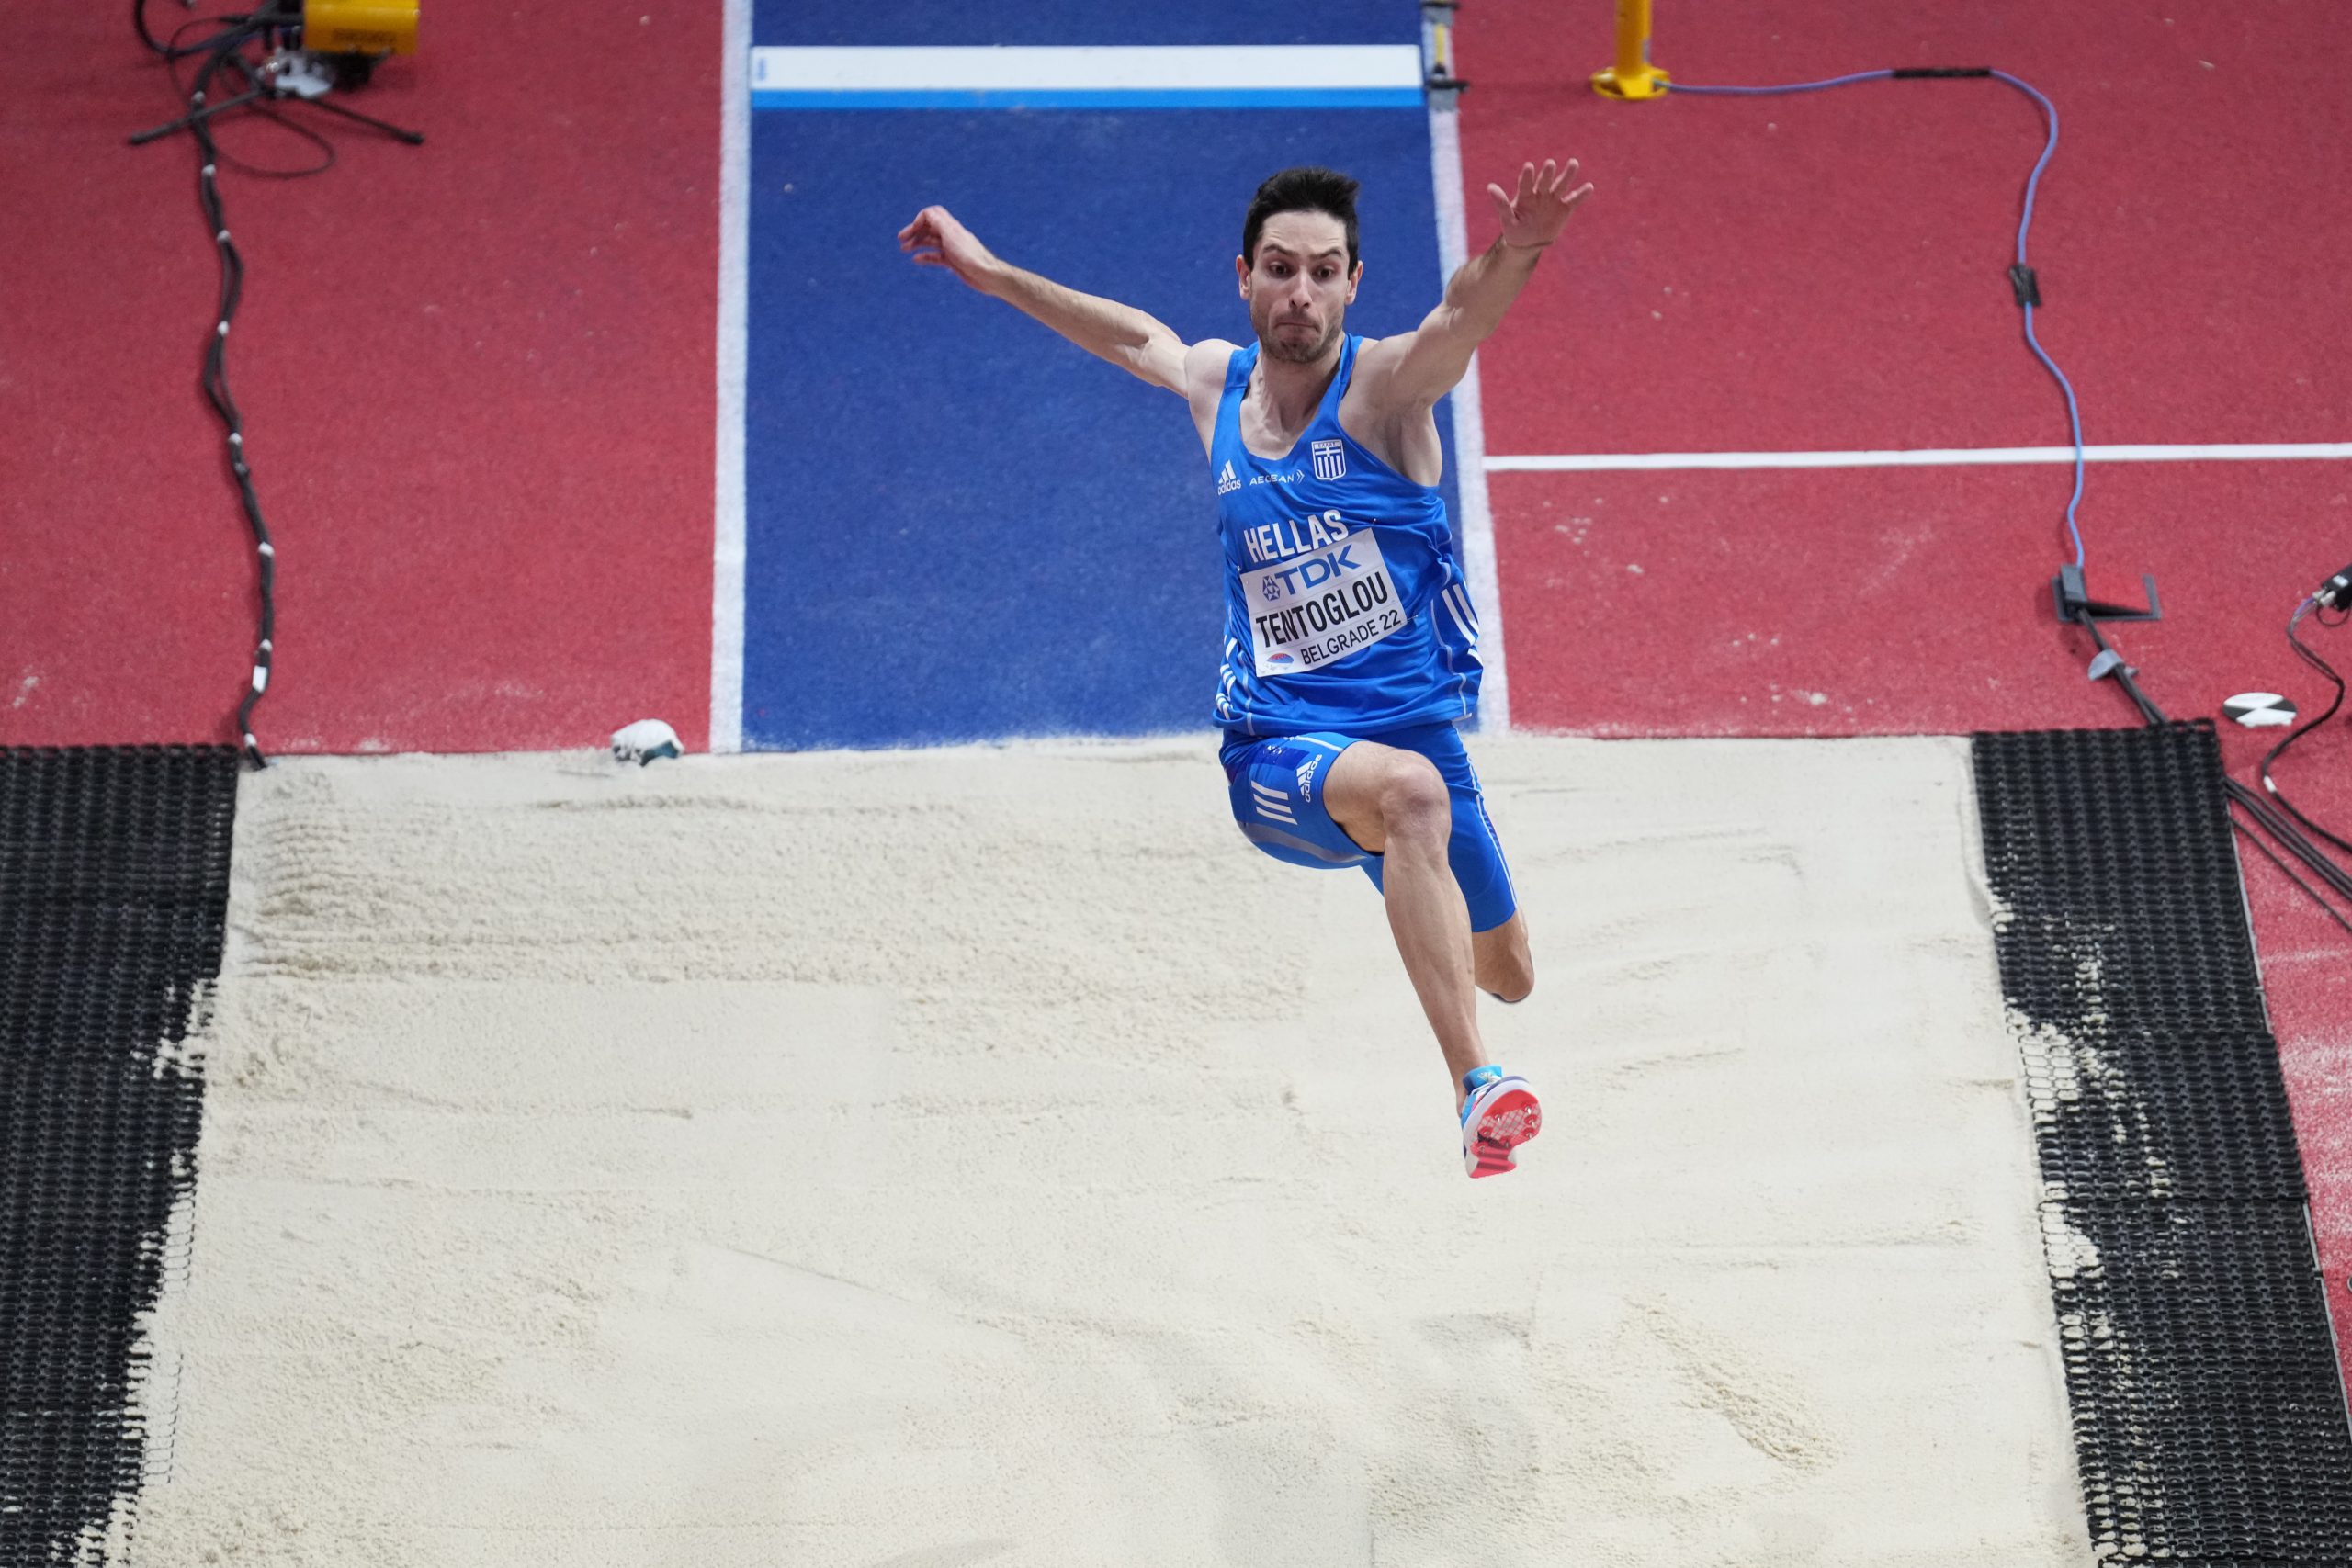 Ο Μίλτος Τεντόγλου στους 3 κορυφαίους αθλητές της Ευρώπης